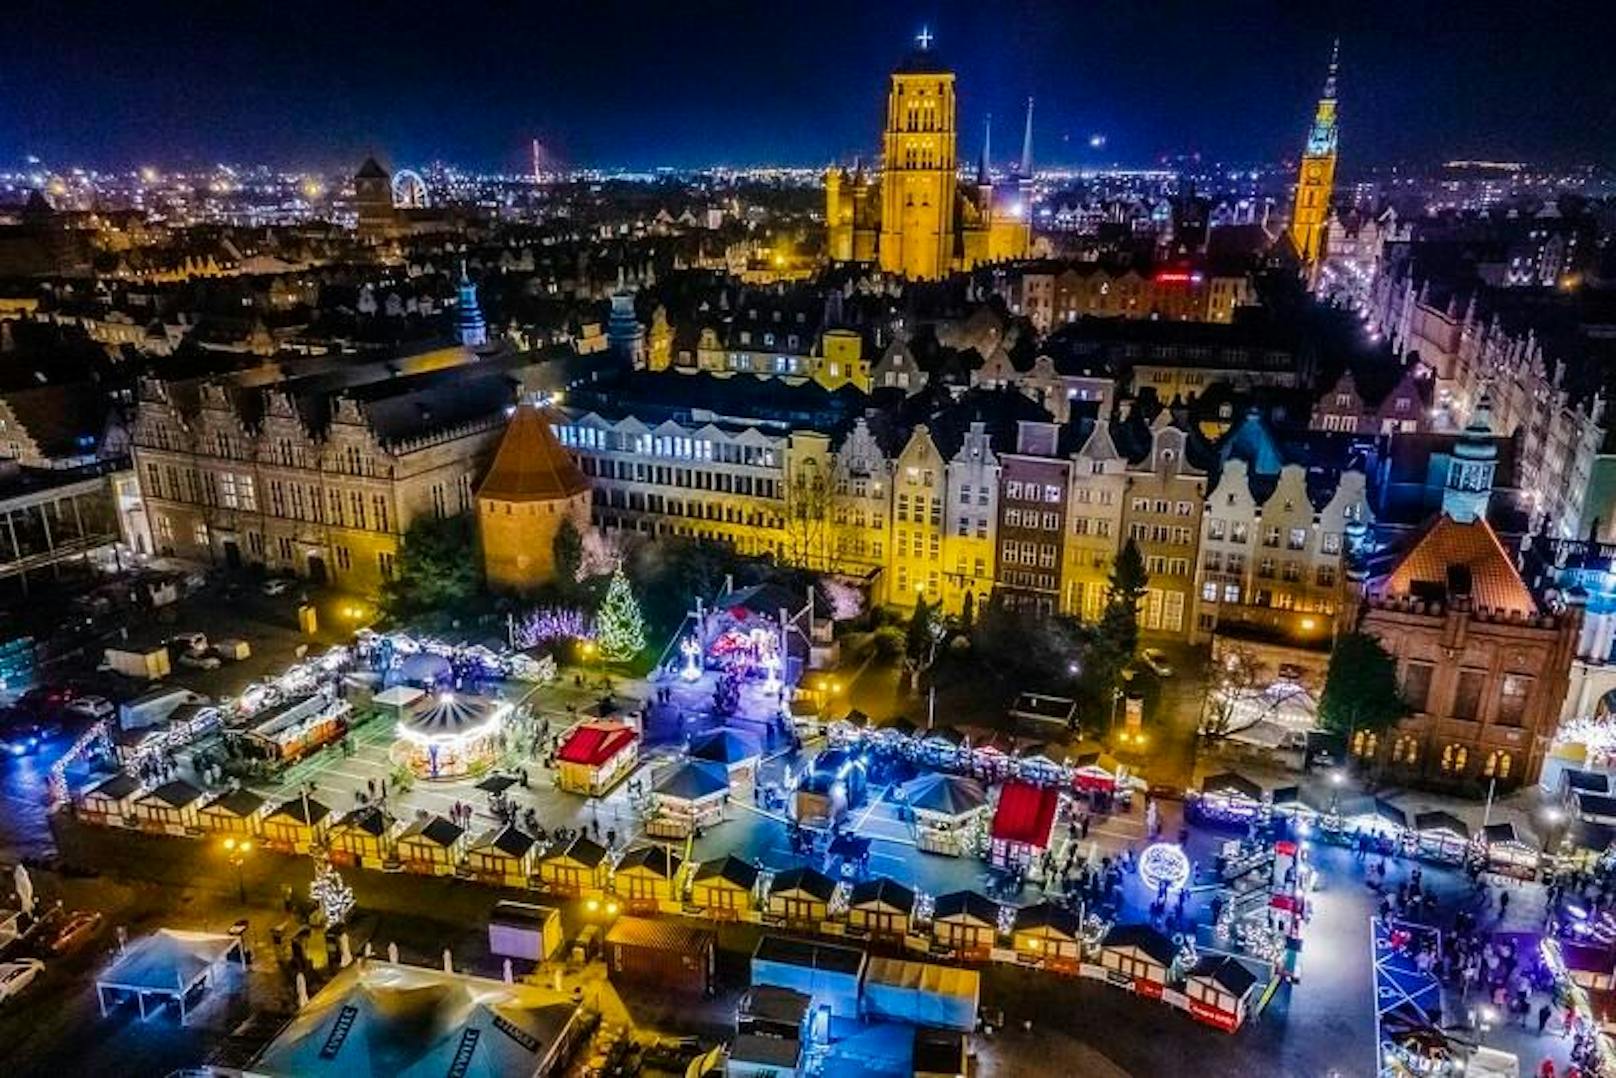 Der Weihnachtsmarkt auf dem Weglowy-Platz in der wunderschönen Stadt Gdańsk.